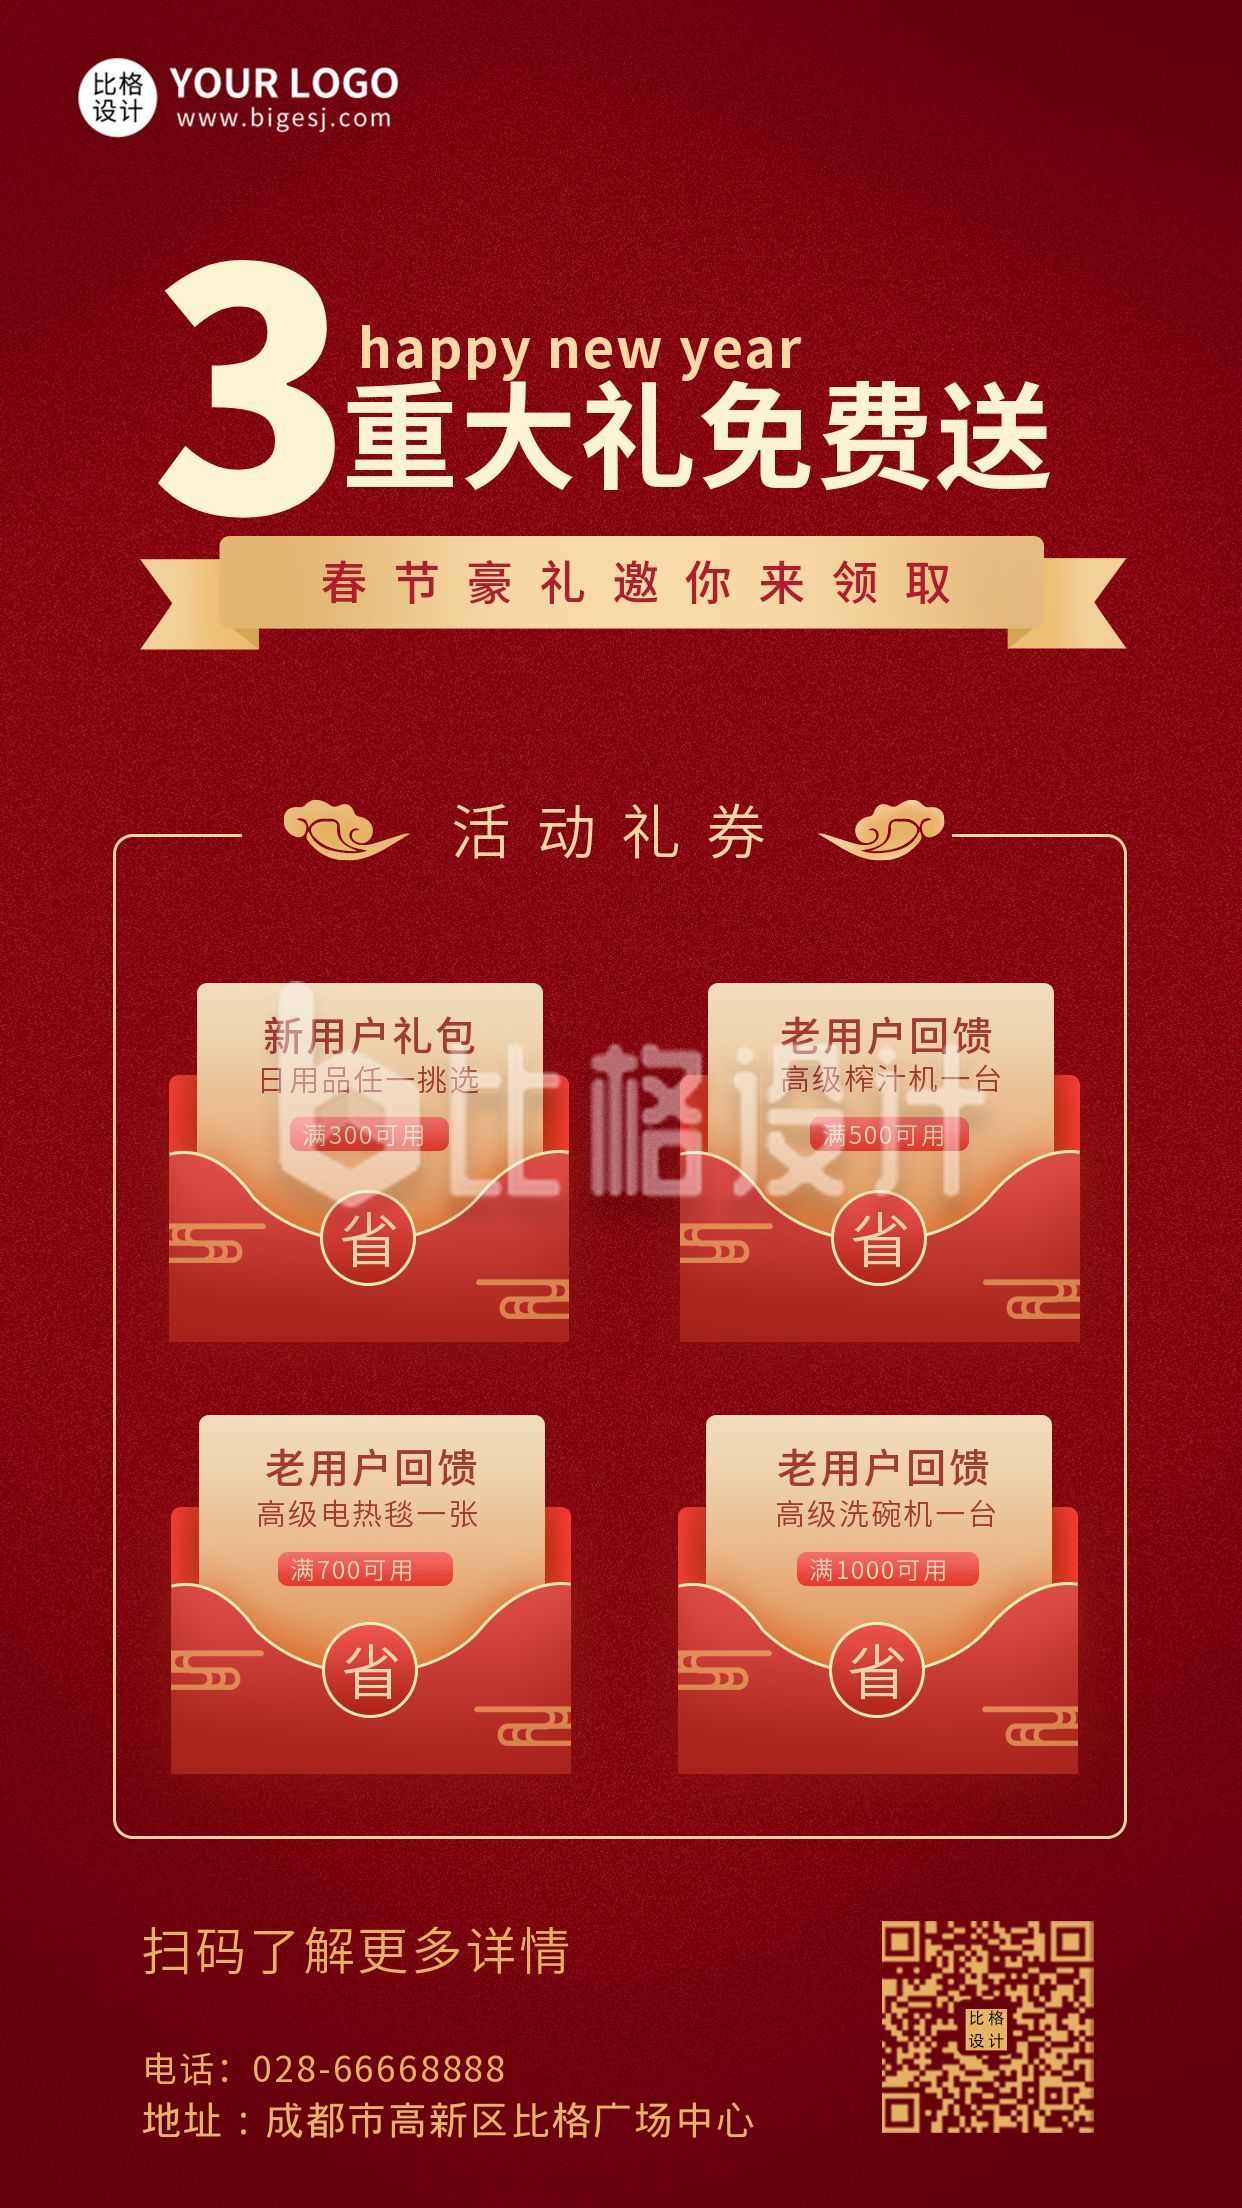 春节节日领取优惠卷促销送红包活动手机海报